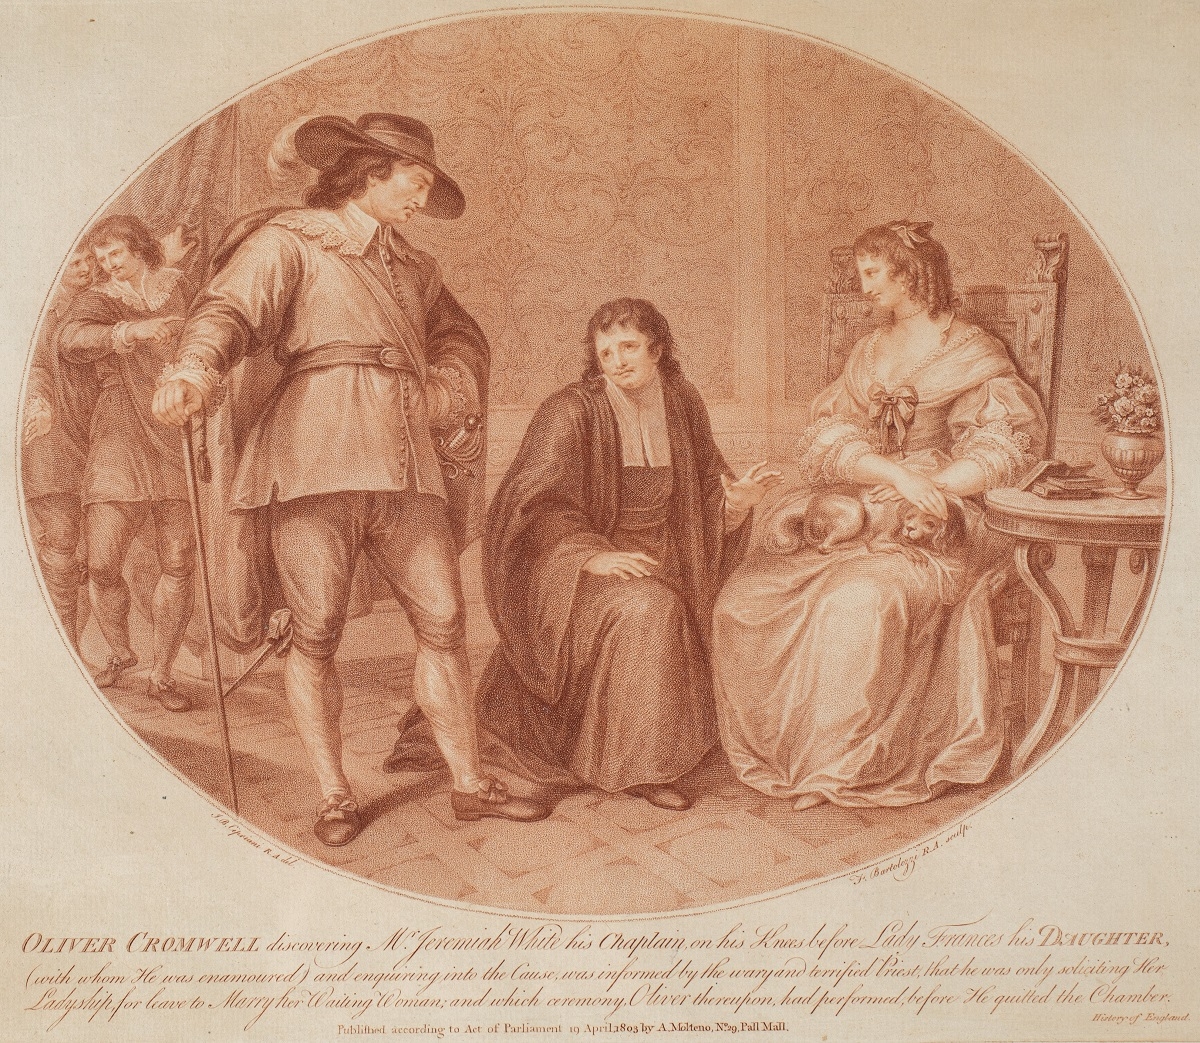 OLIWER CROMWELL ZASTAJE KAPELANA JEREMIASZA WHITE'A KLĘCZĄCEGO PRZED SWOJĄ CÓRKĄ, 1803 by Francesco Bartolozzi